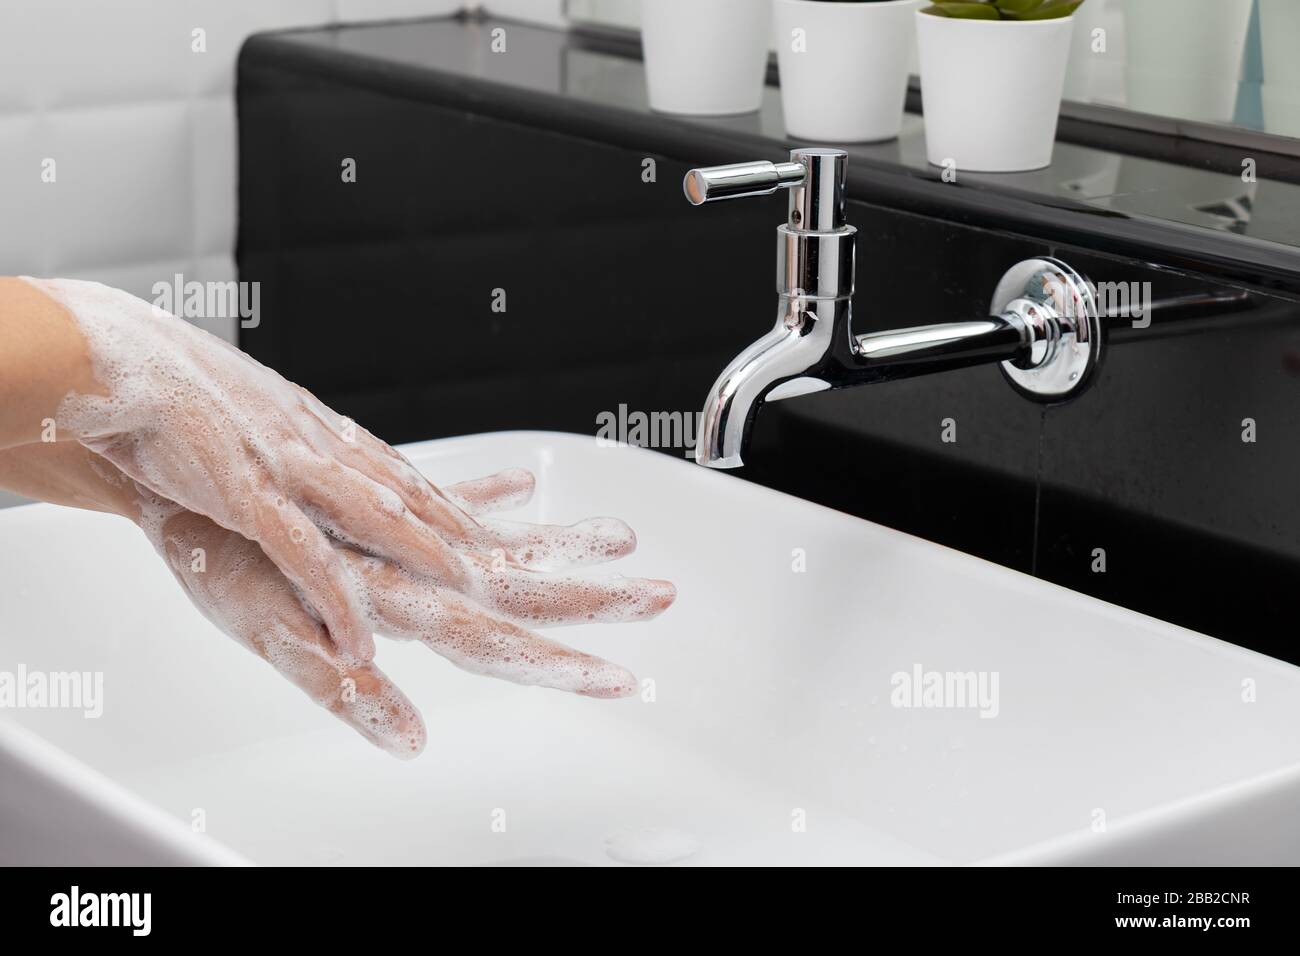 Persönliche Hygiene: Hände waschen, Hand gründlich mit Seife reiben, die viele Blasen zur Reinigung und Desinfektion hat, Vermeidung von Verstreuung Stockfoto